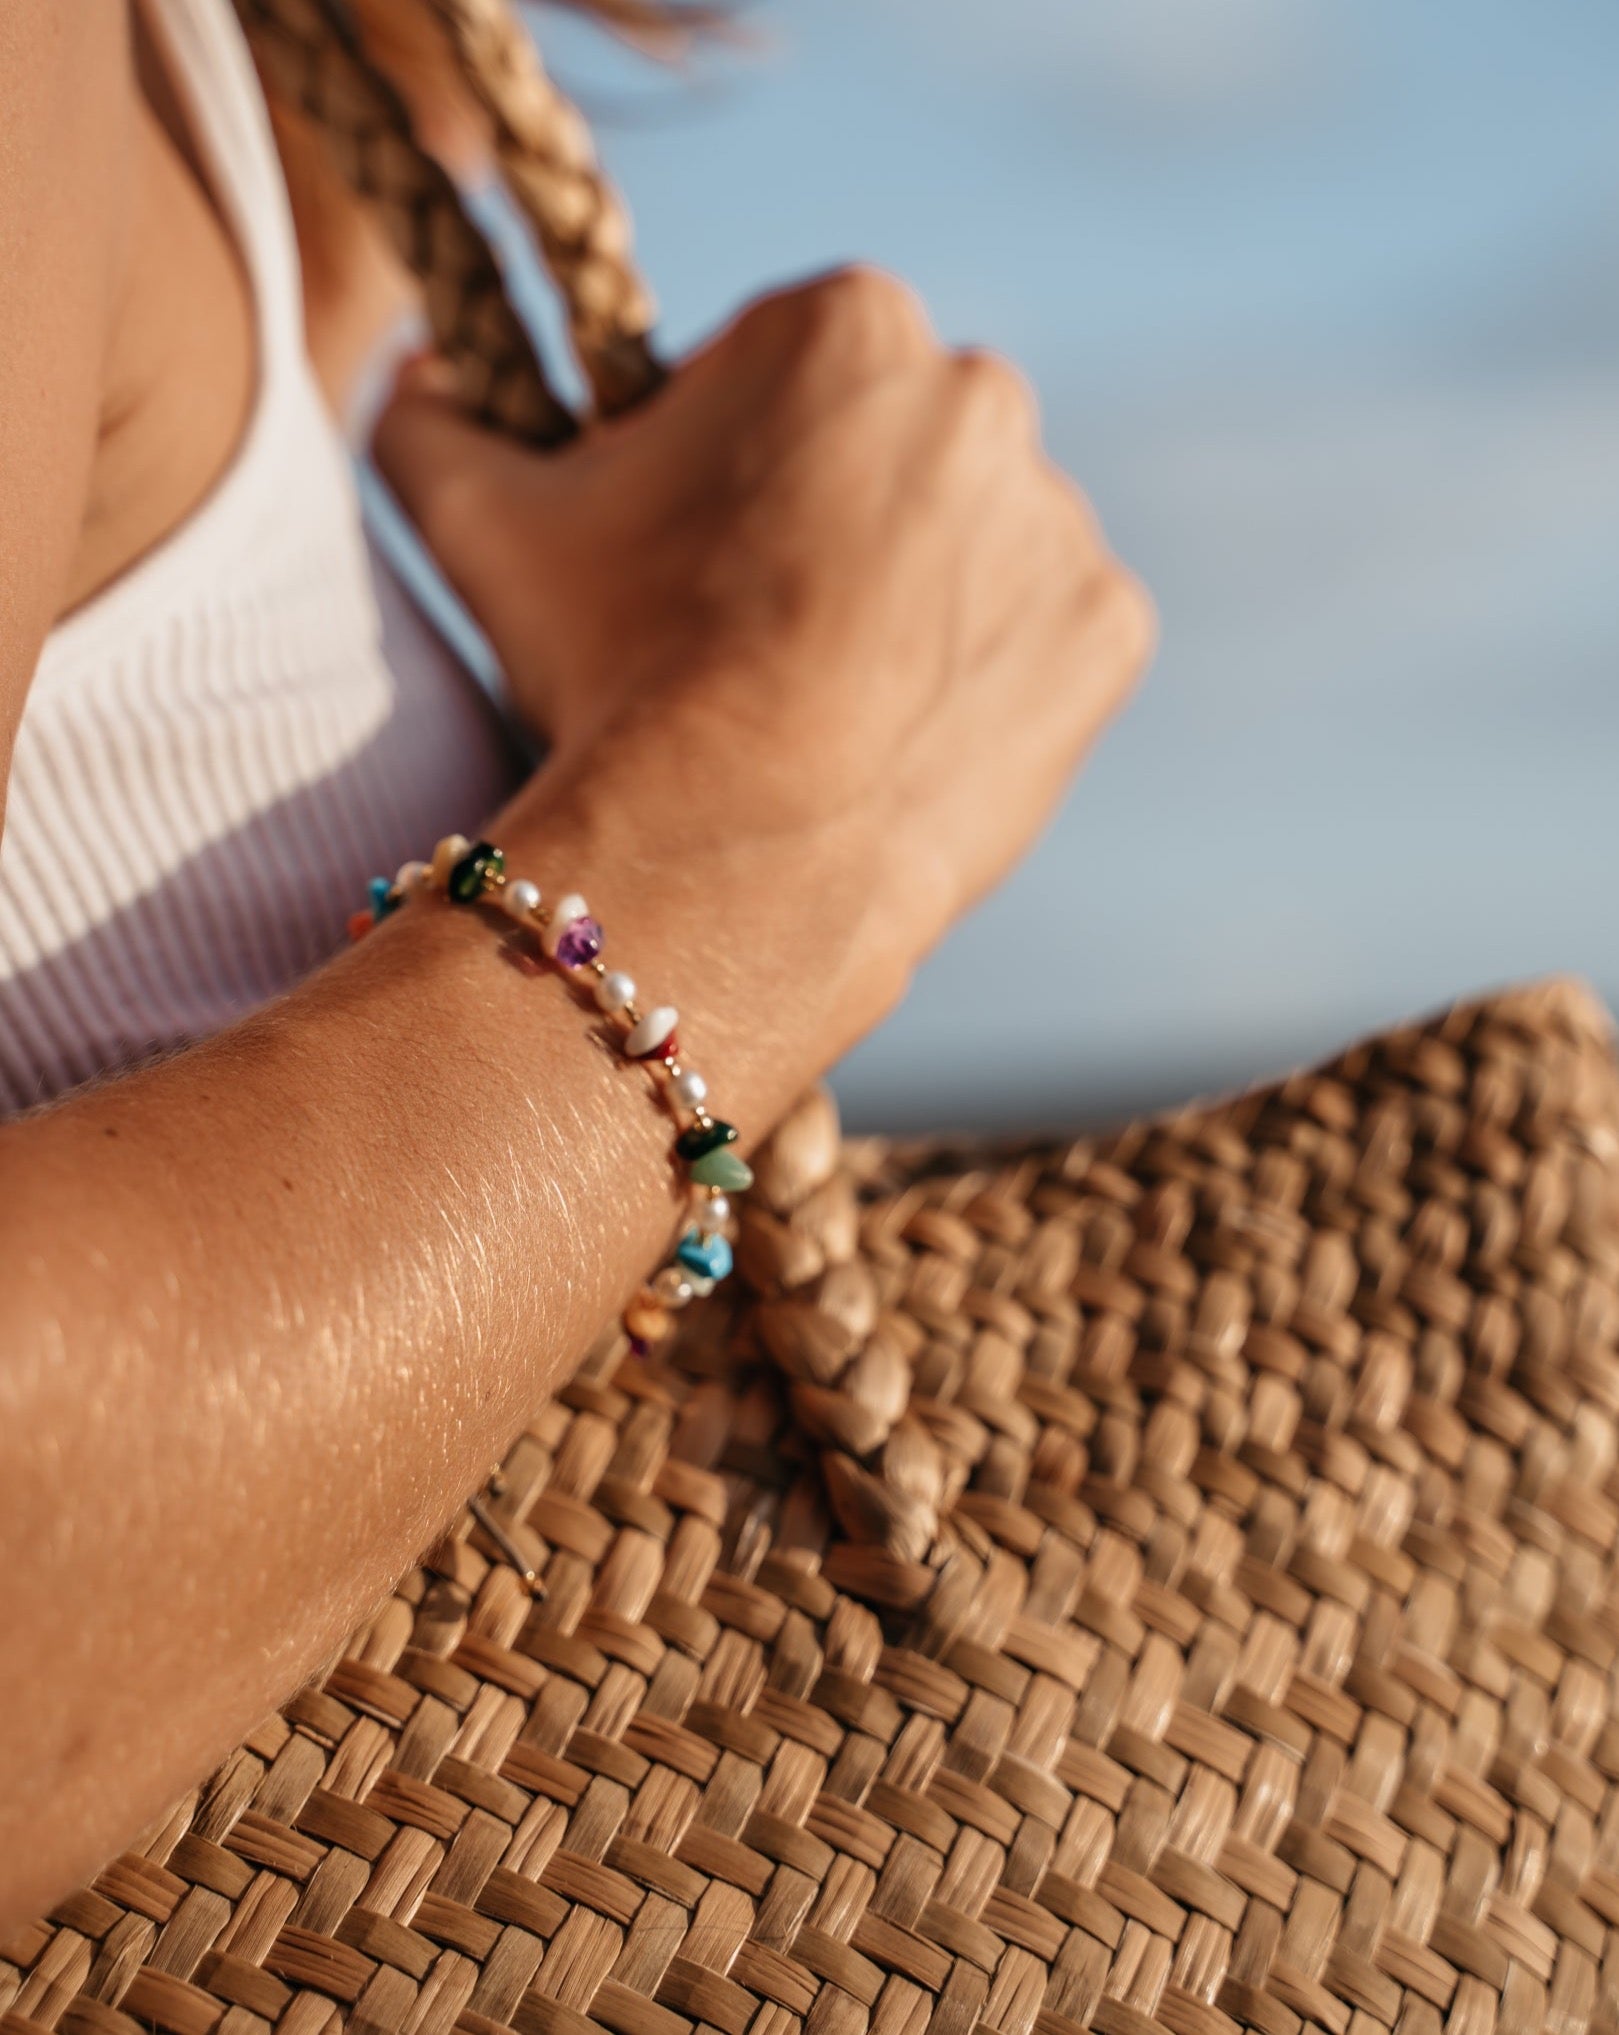 Buntes Armband | Handgemachtes Armband von VERLAN Jewellery | Flexibel verstellbar mit bunten Steinen | Fair und umweltschonend handmade in Bali